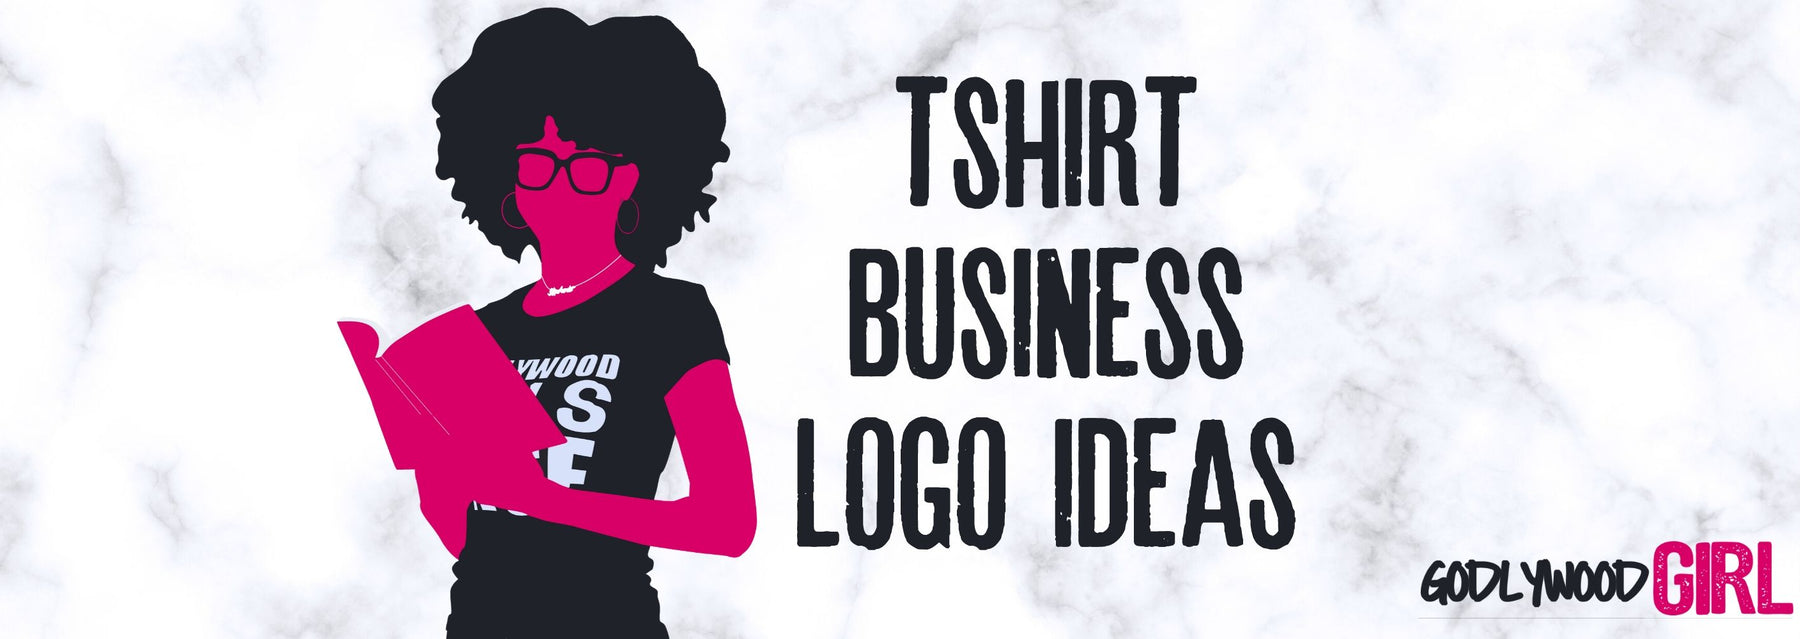 T-SHIRT BUSINESS LOGO | T-SHIRT LOGO IDEAS | Start A T-Shirt Business As A Christian Entrepreneur